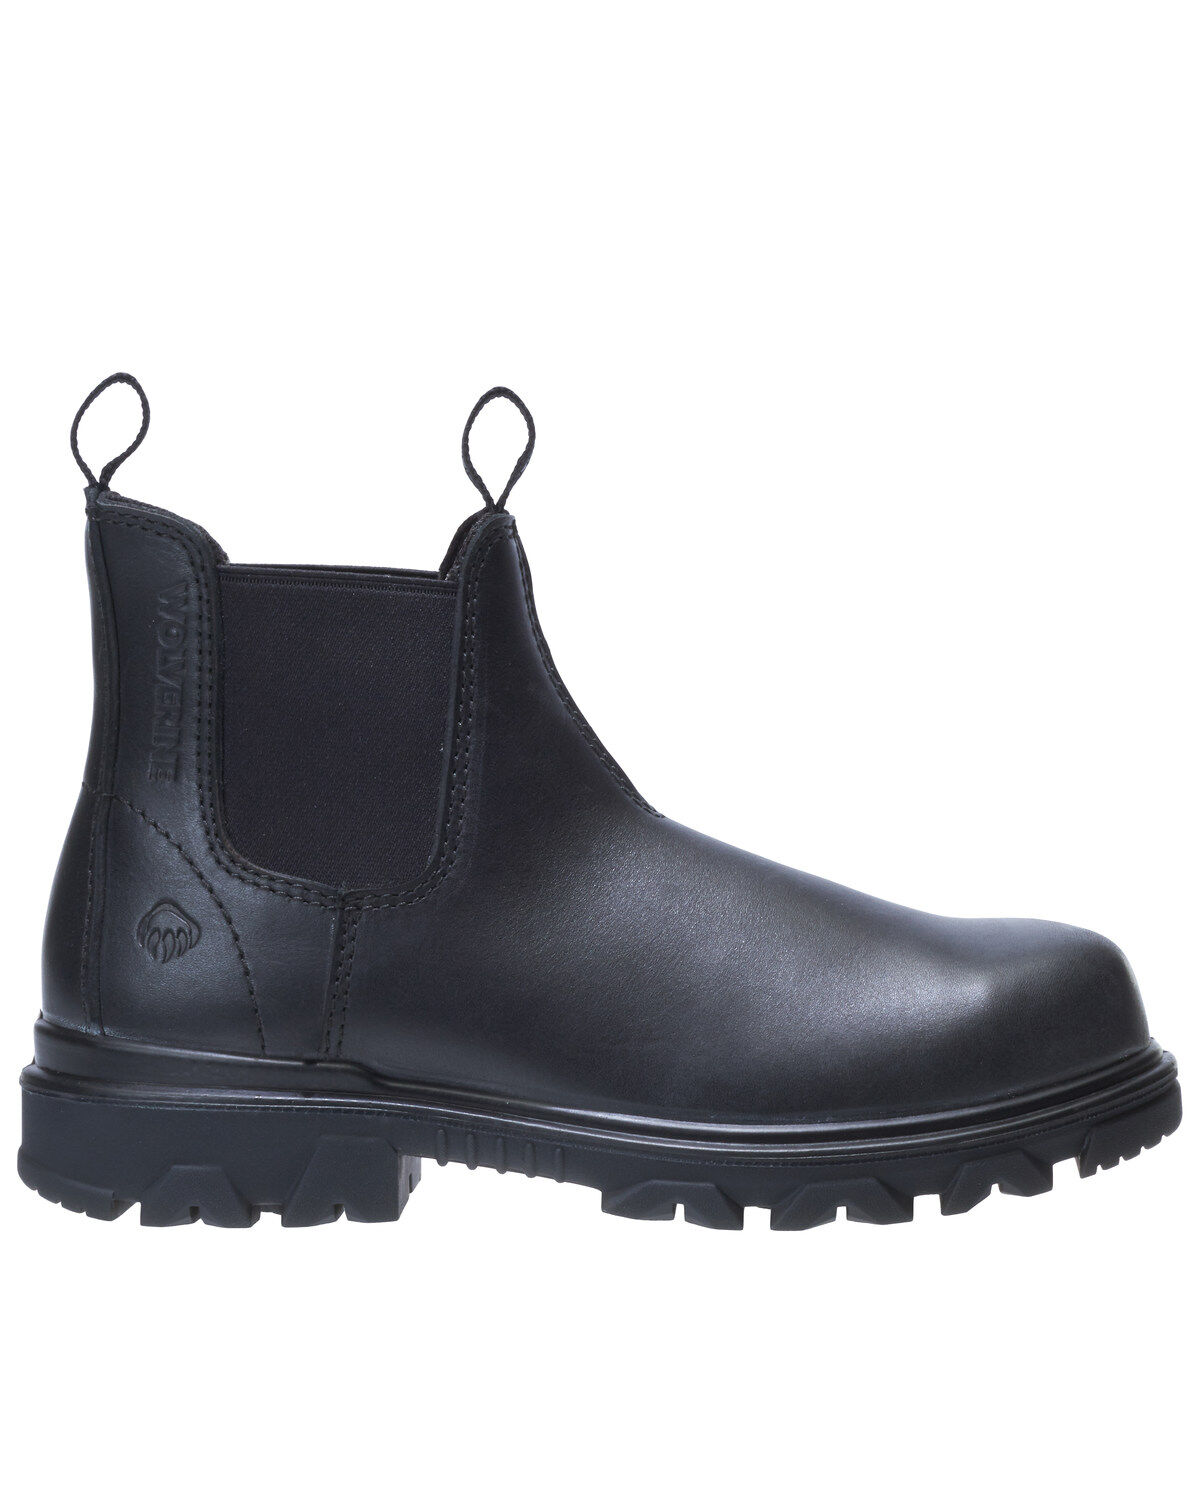 black wolverine boots